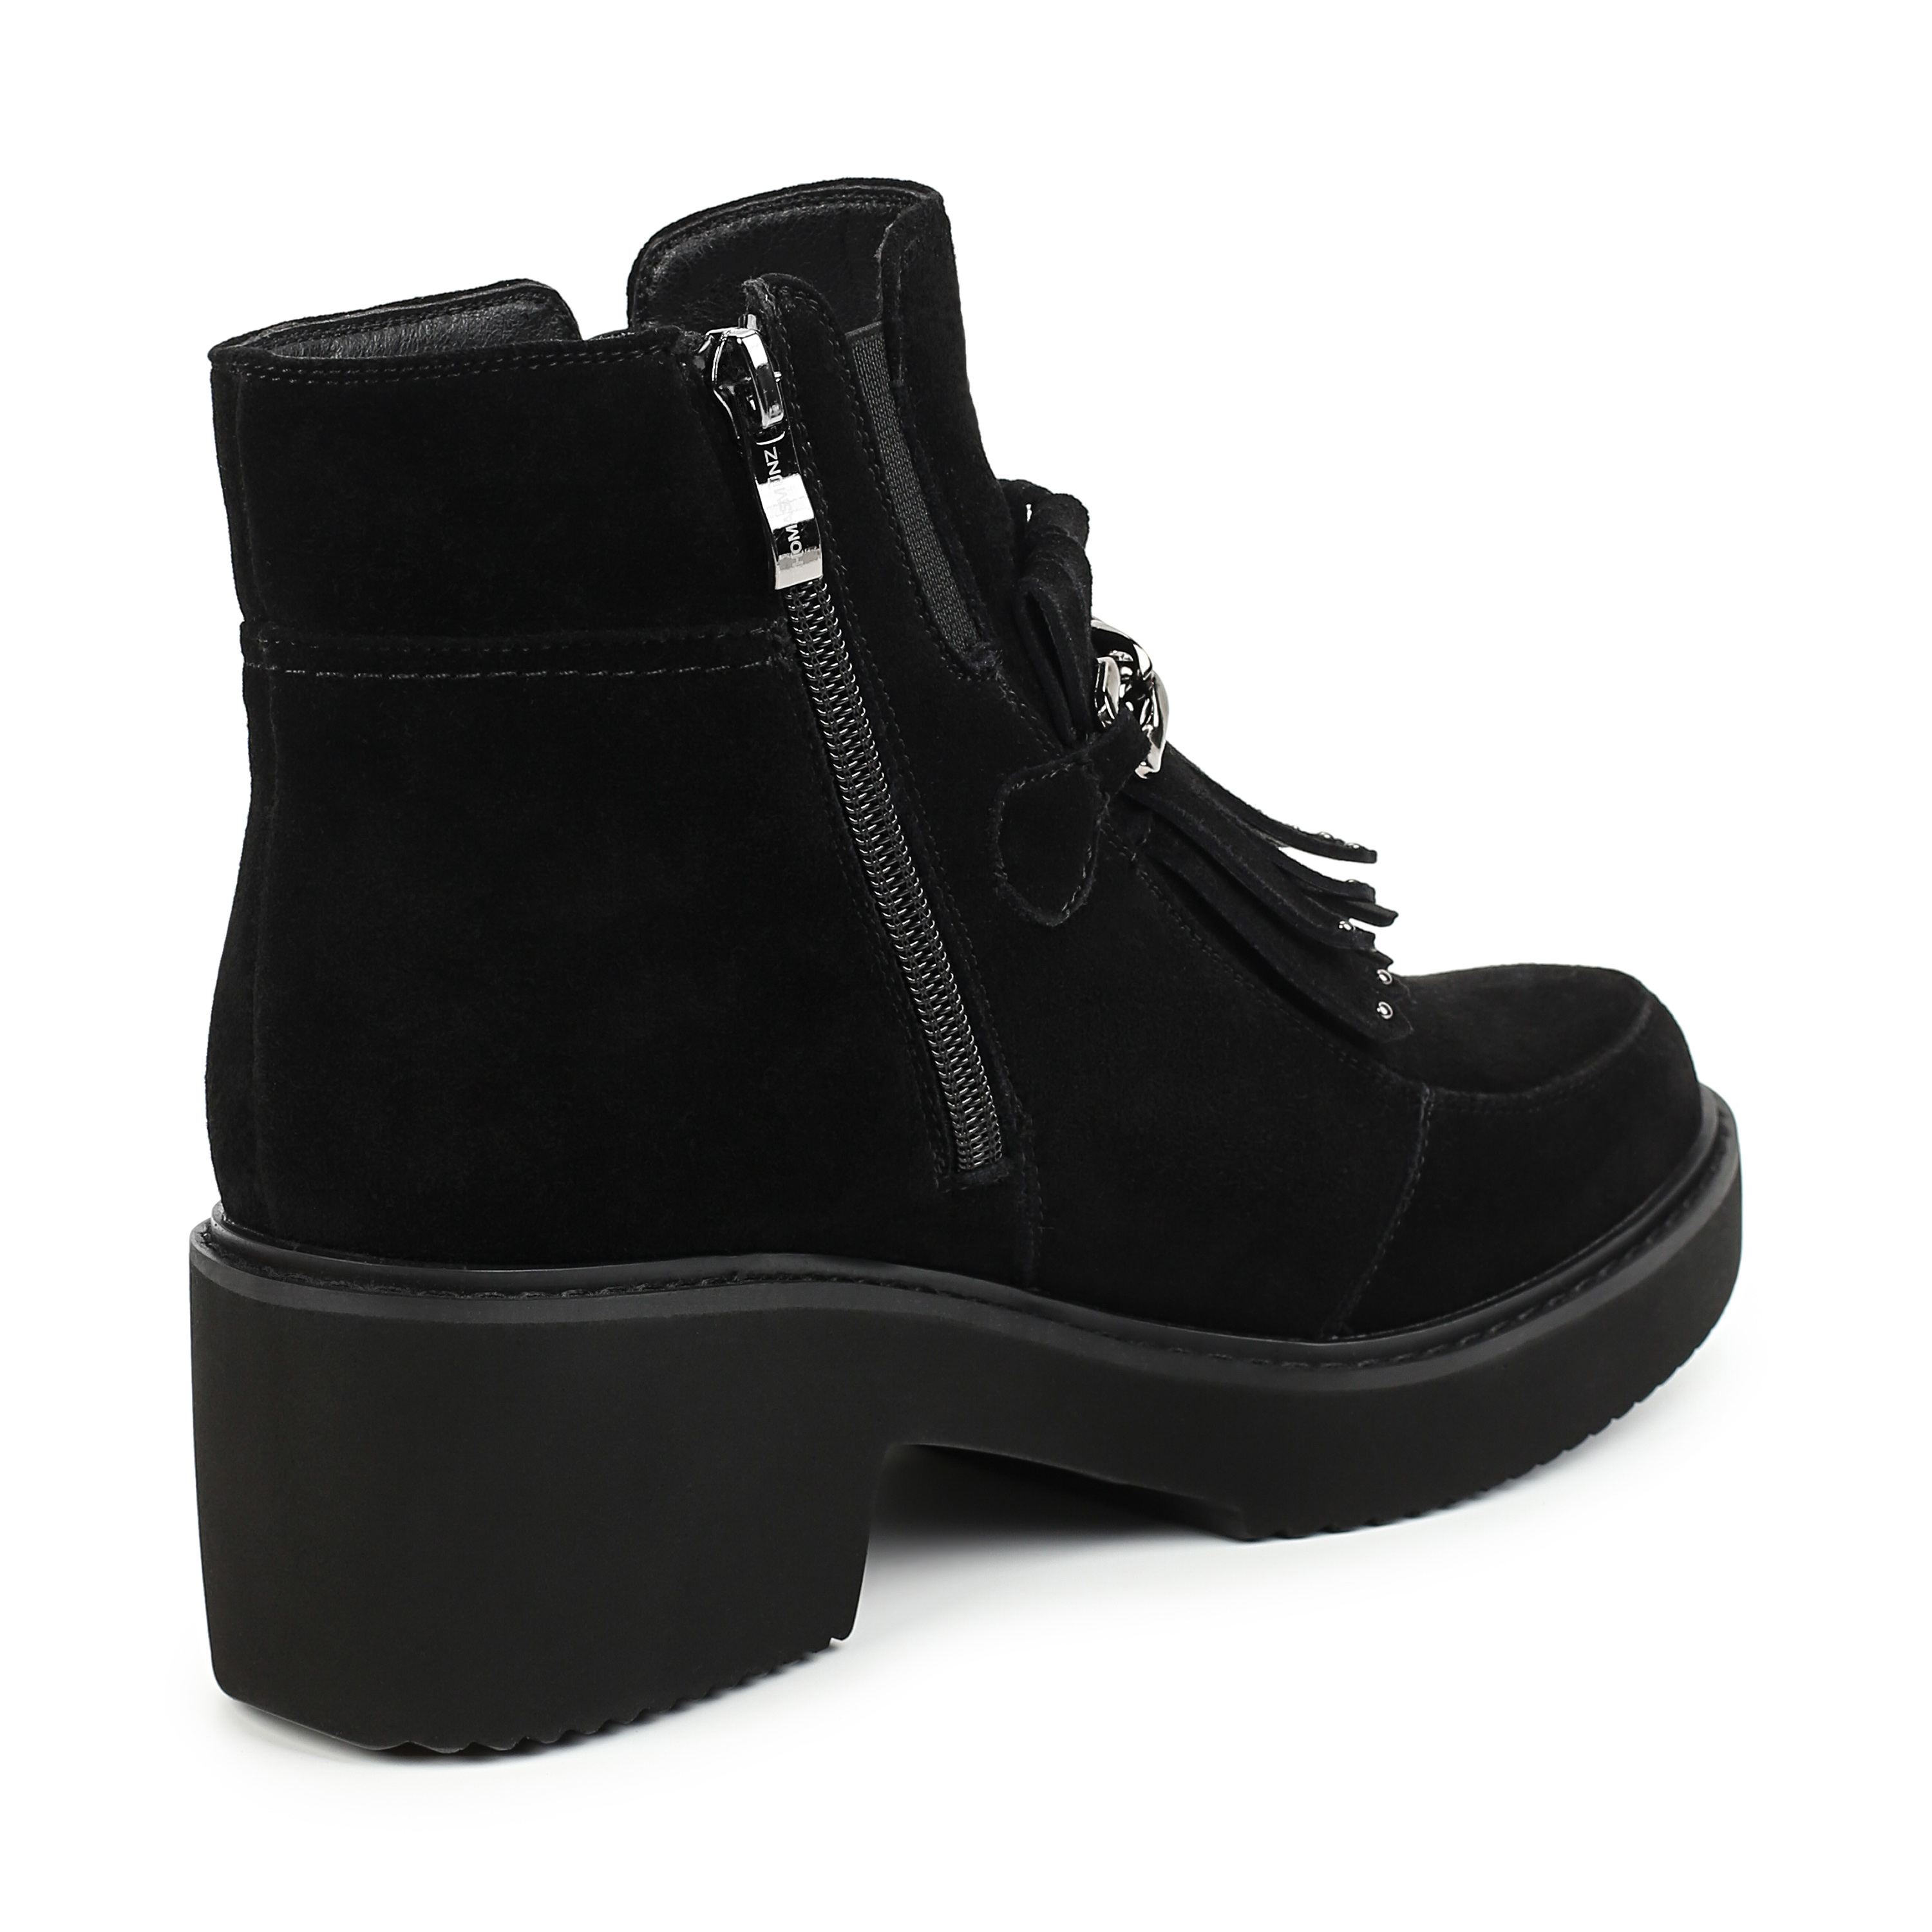 Ботинки Thomas Munz 080-149A-20602 080-149A-20602, цвет черный, размер 38 - фото 3